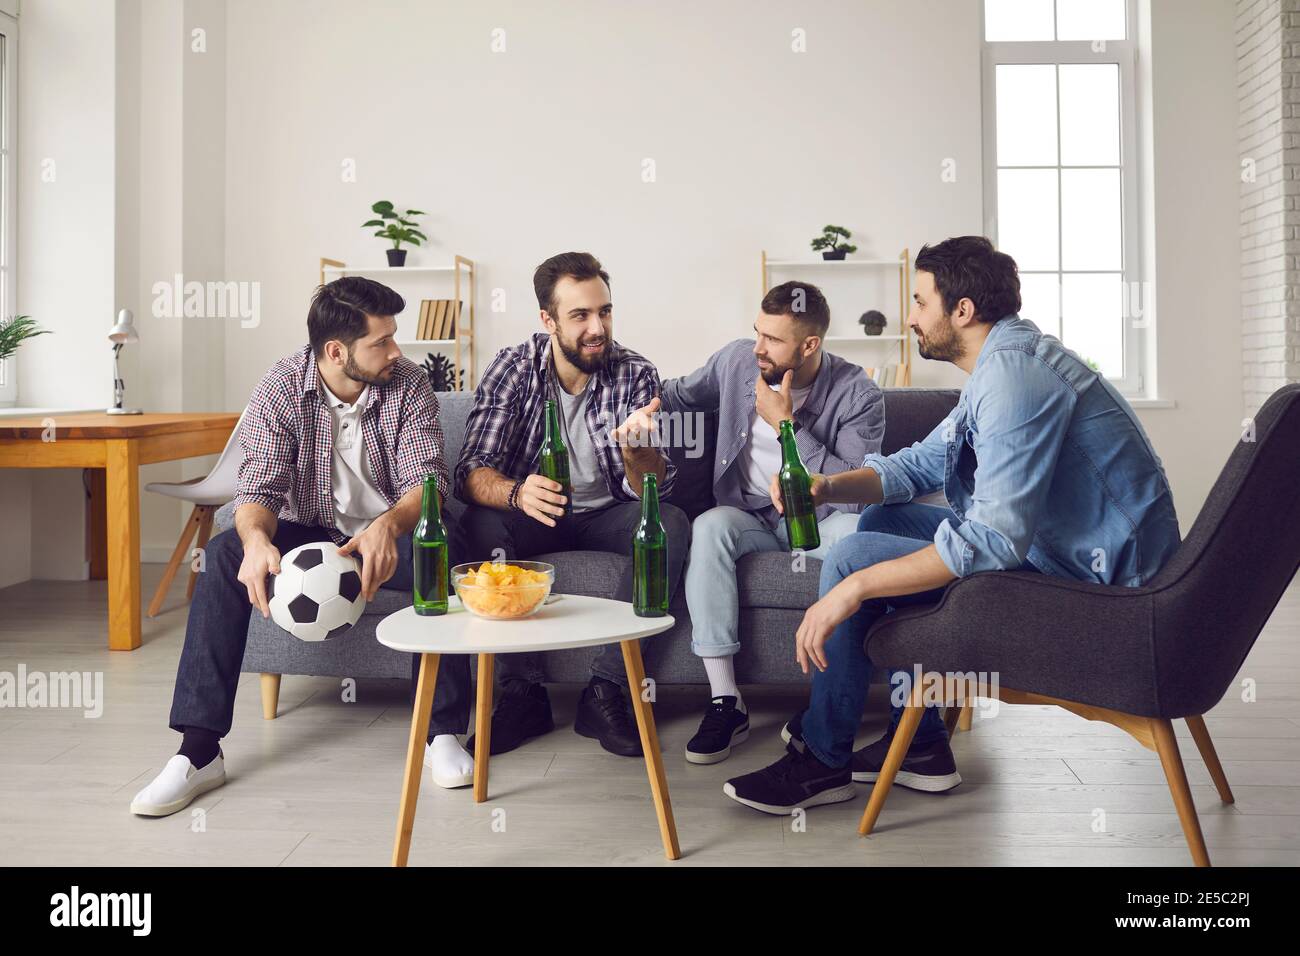 Gruppe von Männern auf dem Sofa sitzen, Bier trinken, Snacks essen und diskutieren Fußballspiel Stockfoto